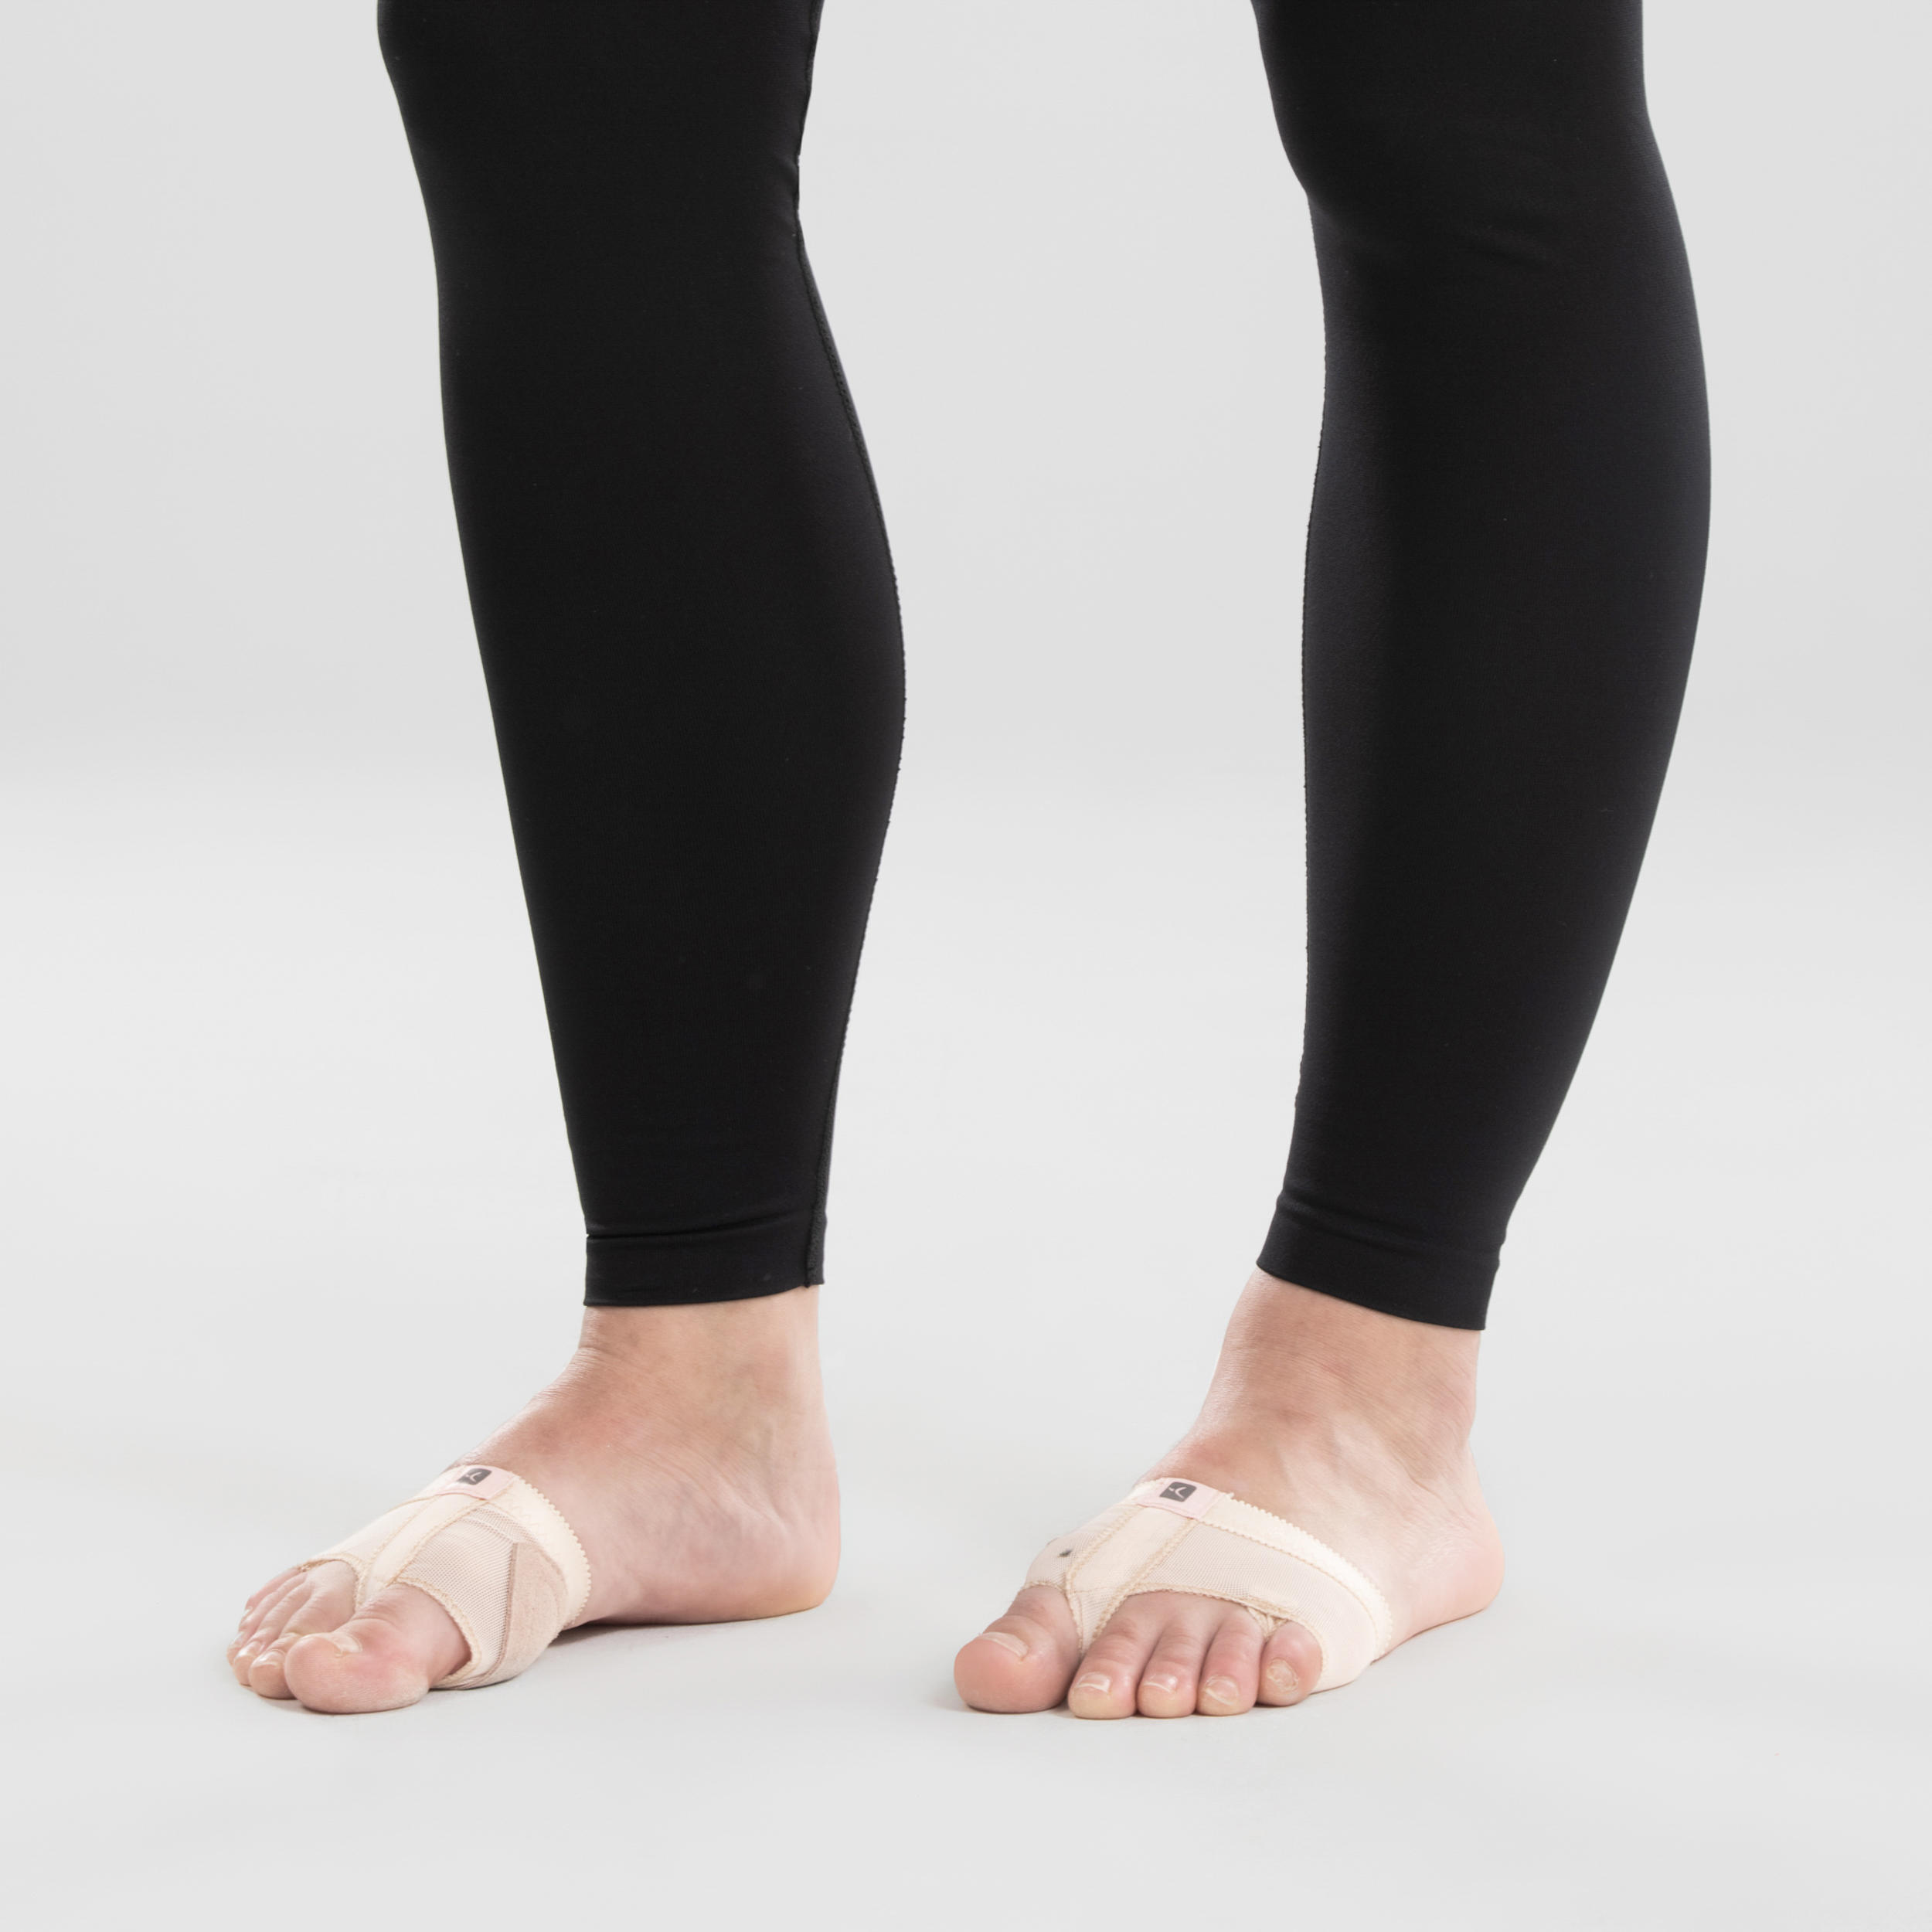 Women's Modern Dance Seamless Leggings - Black 5/7